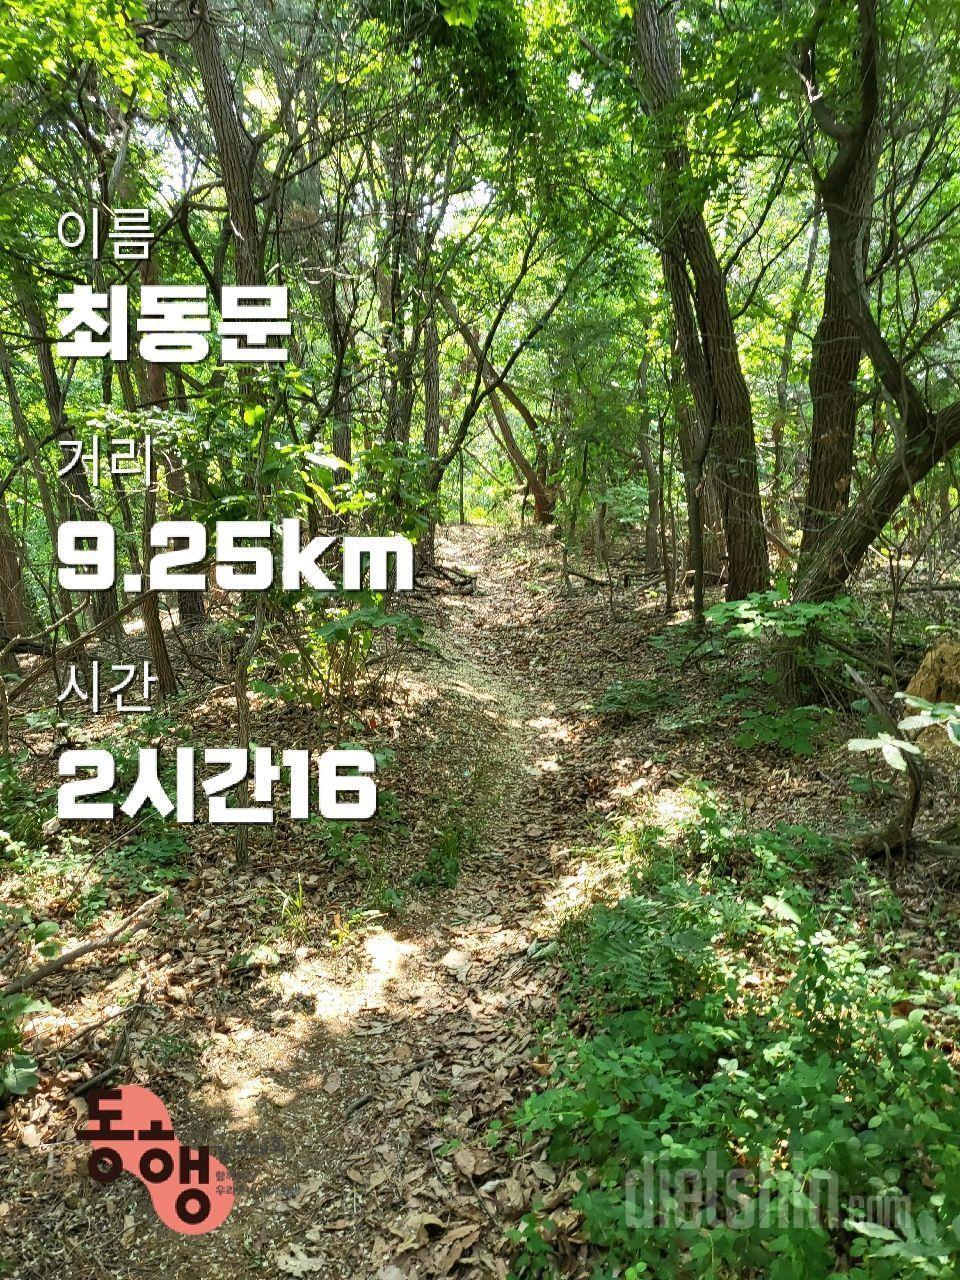 조선일보와 신한은행이 주최하는 5키로미터 걷기대회